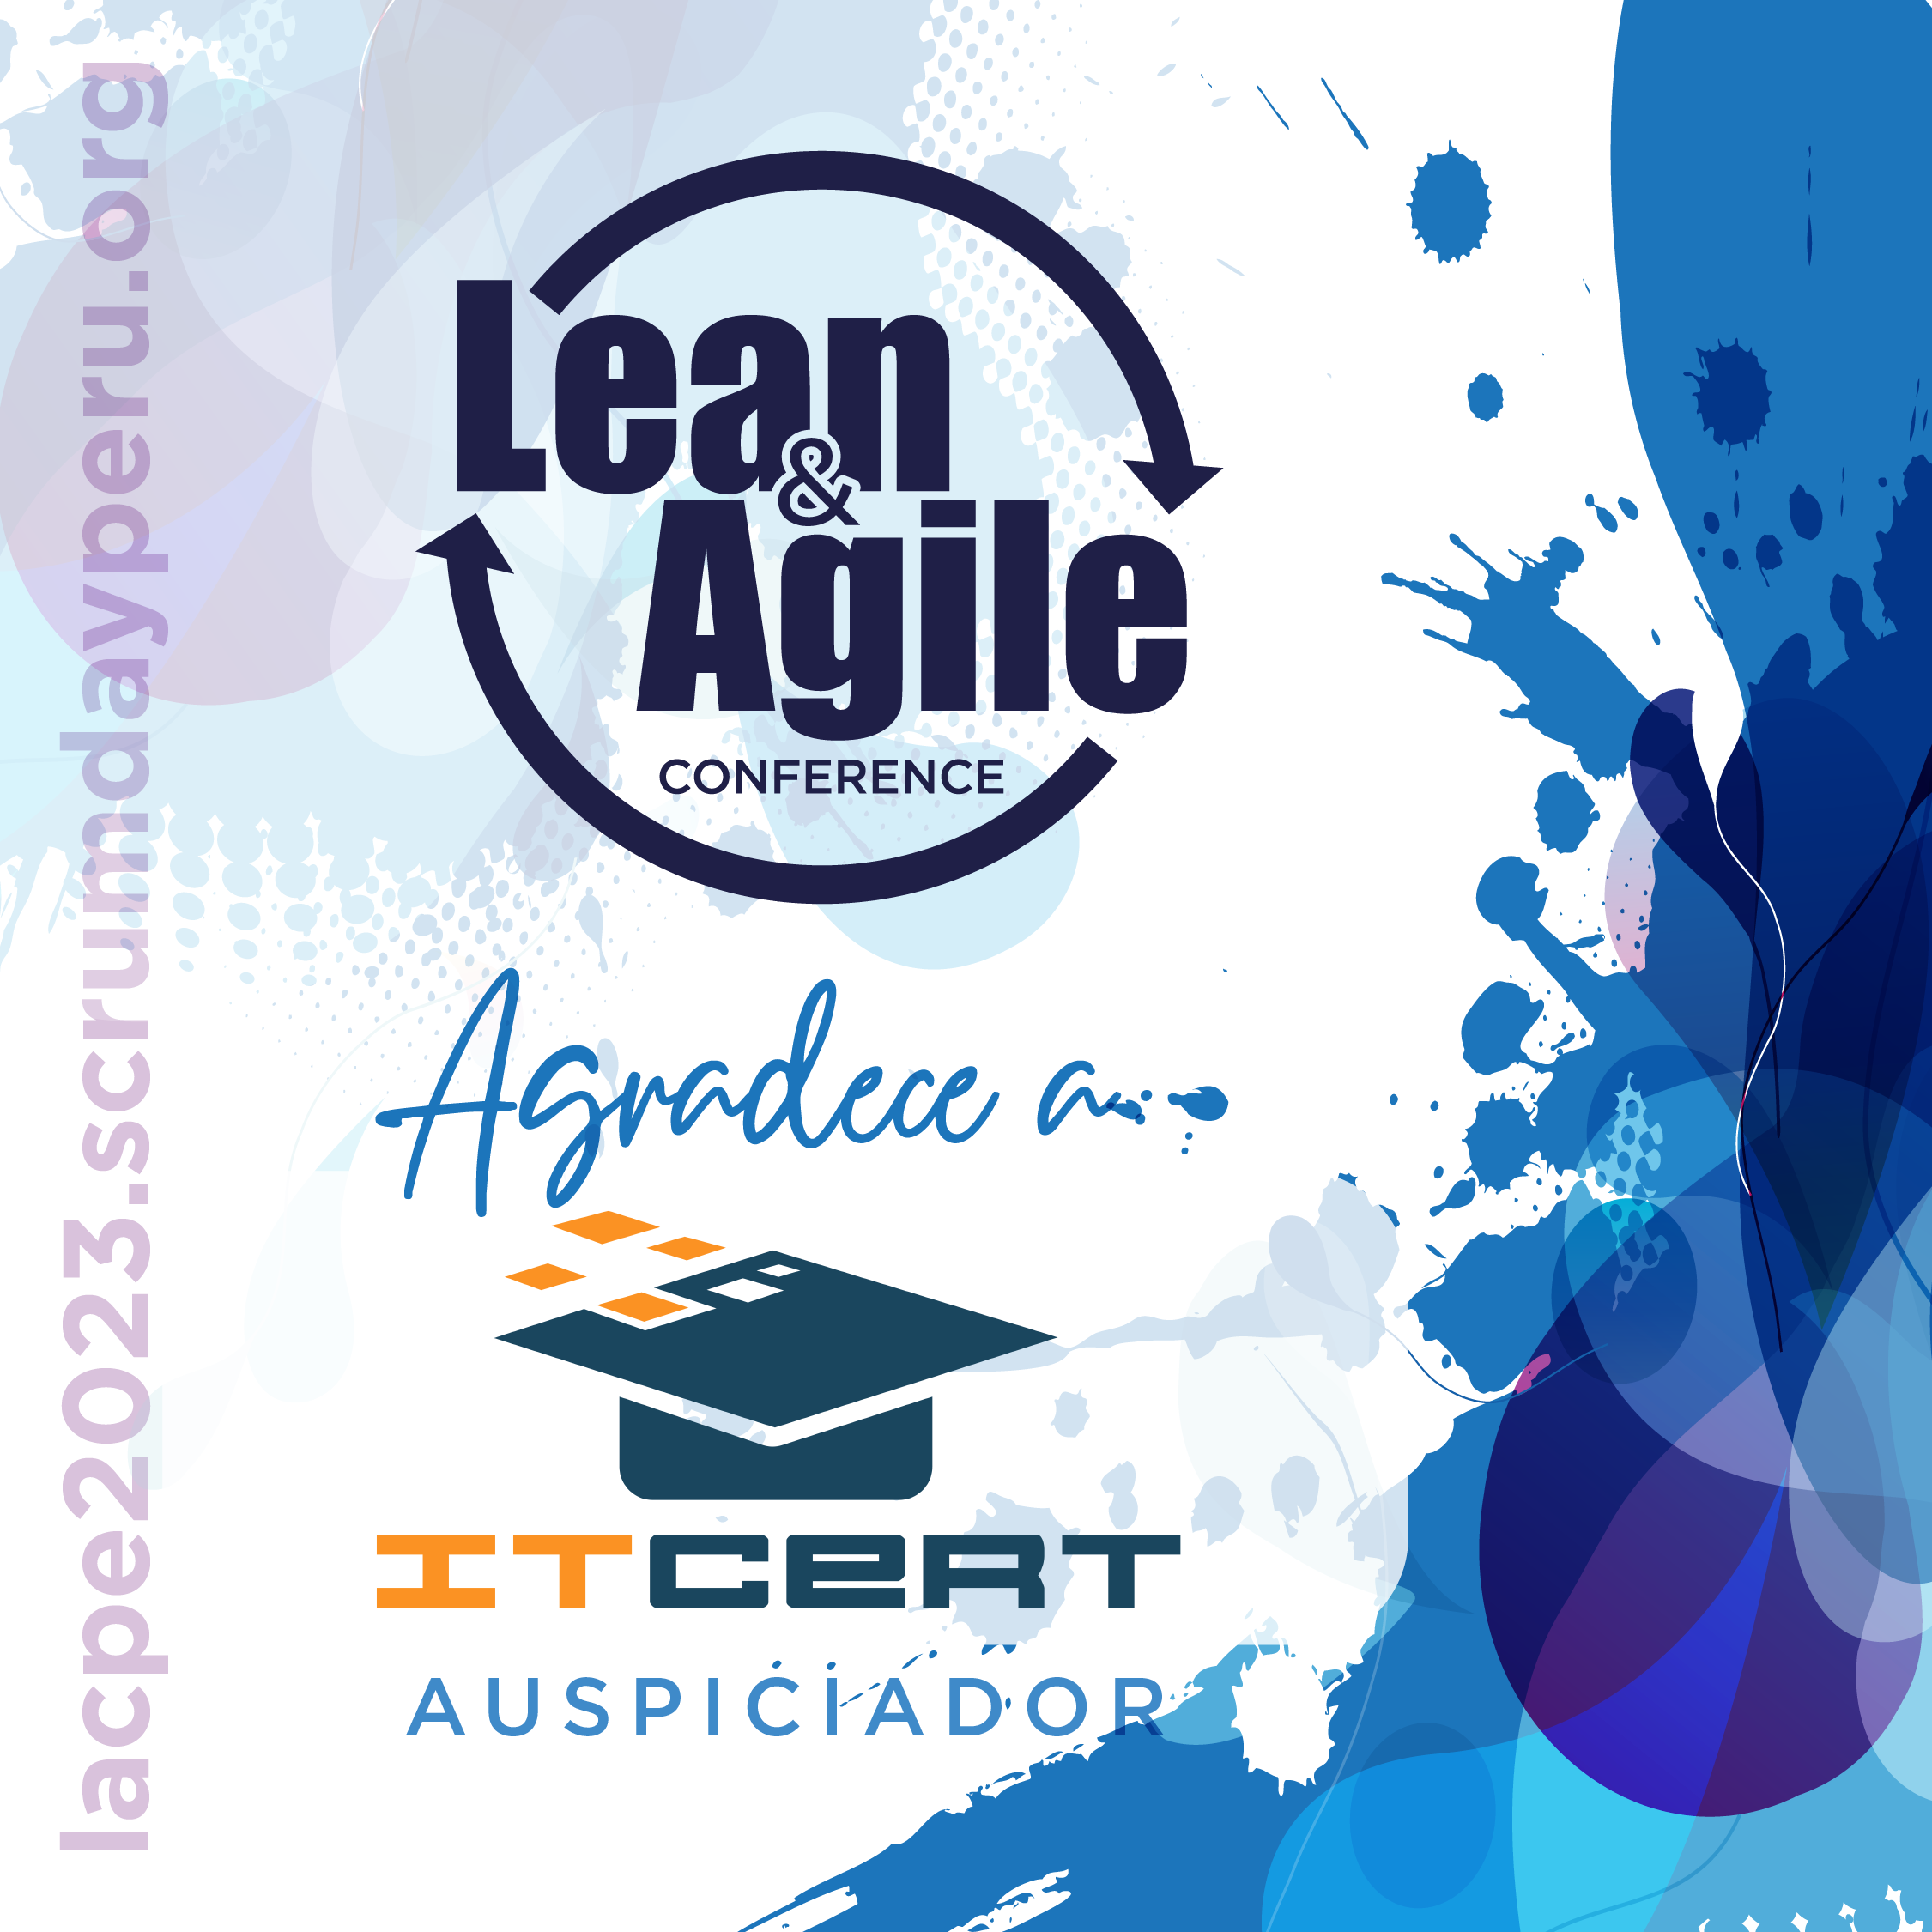 ITCERT patrocina el evento Lean & Agile Conference